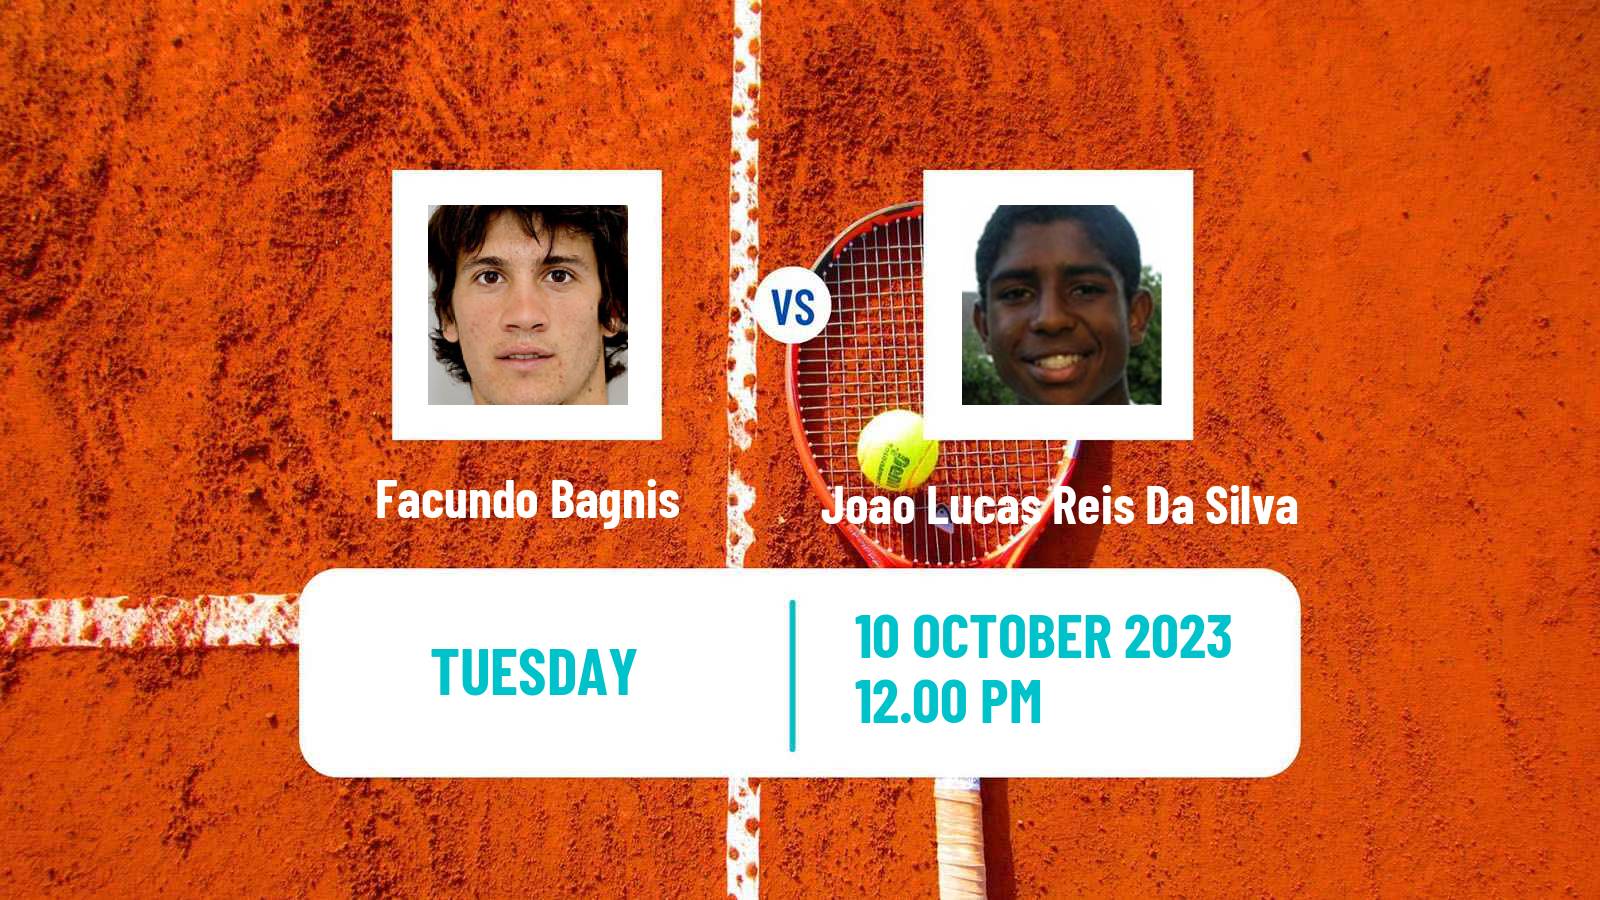 Tennis Buenos Aires 2 Challenger Men Facundo Bagnis - Joao Lucas Reis Da Silva